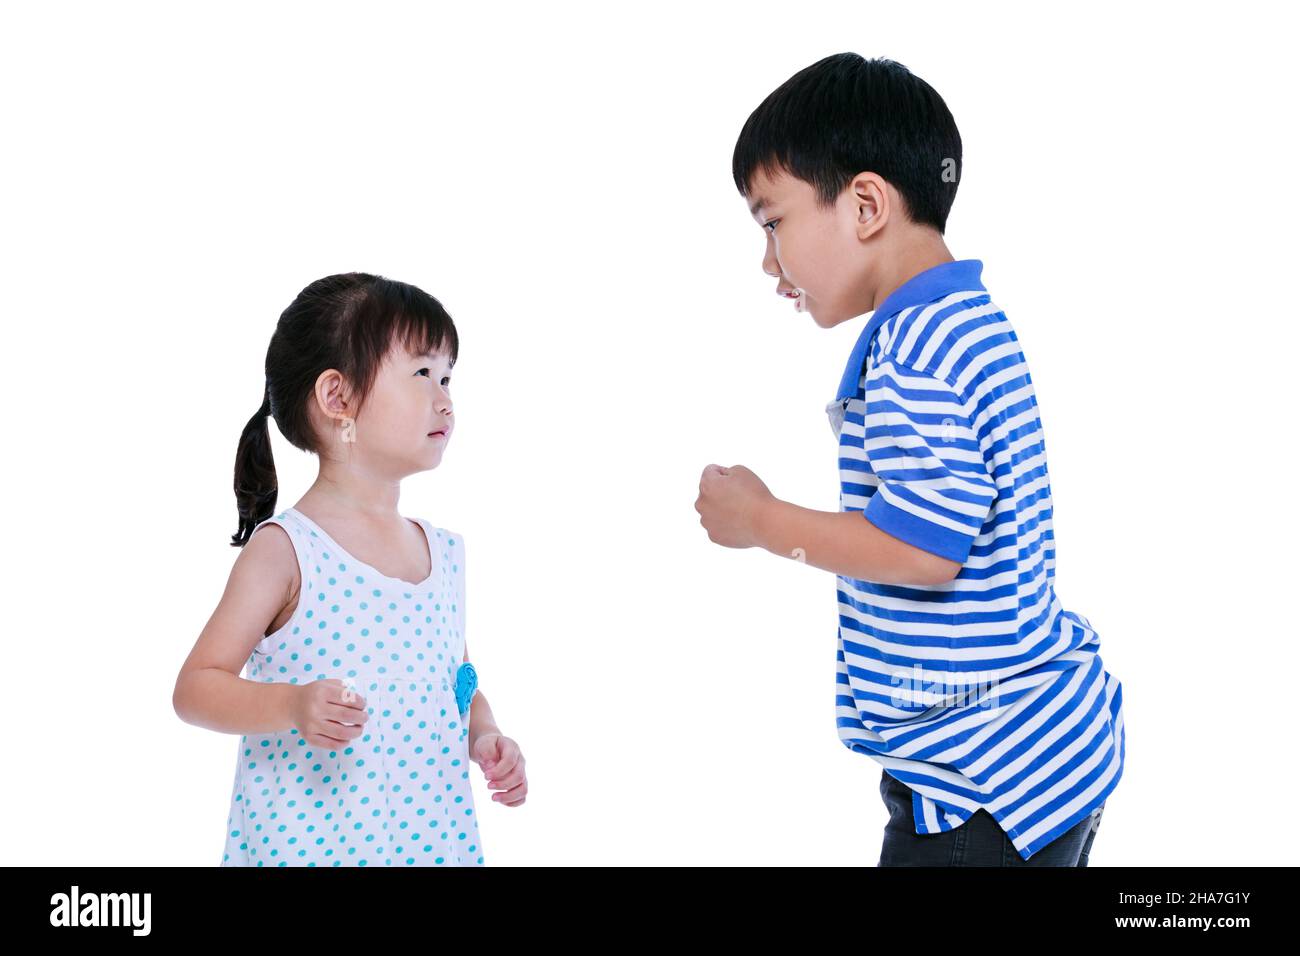 Conflit de querelles entre le frère et la sœur.Les enfants asiatiques se battent, isolés sur fond blanc. Banque D'Images